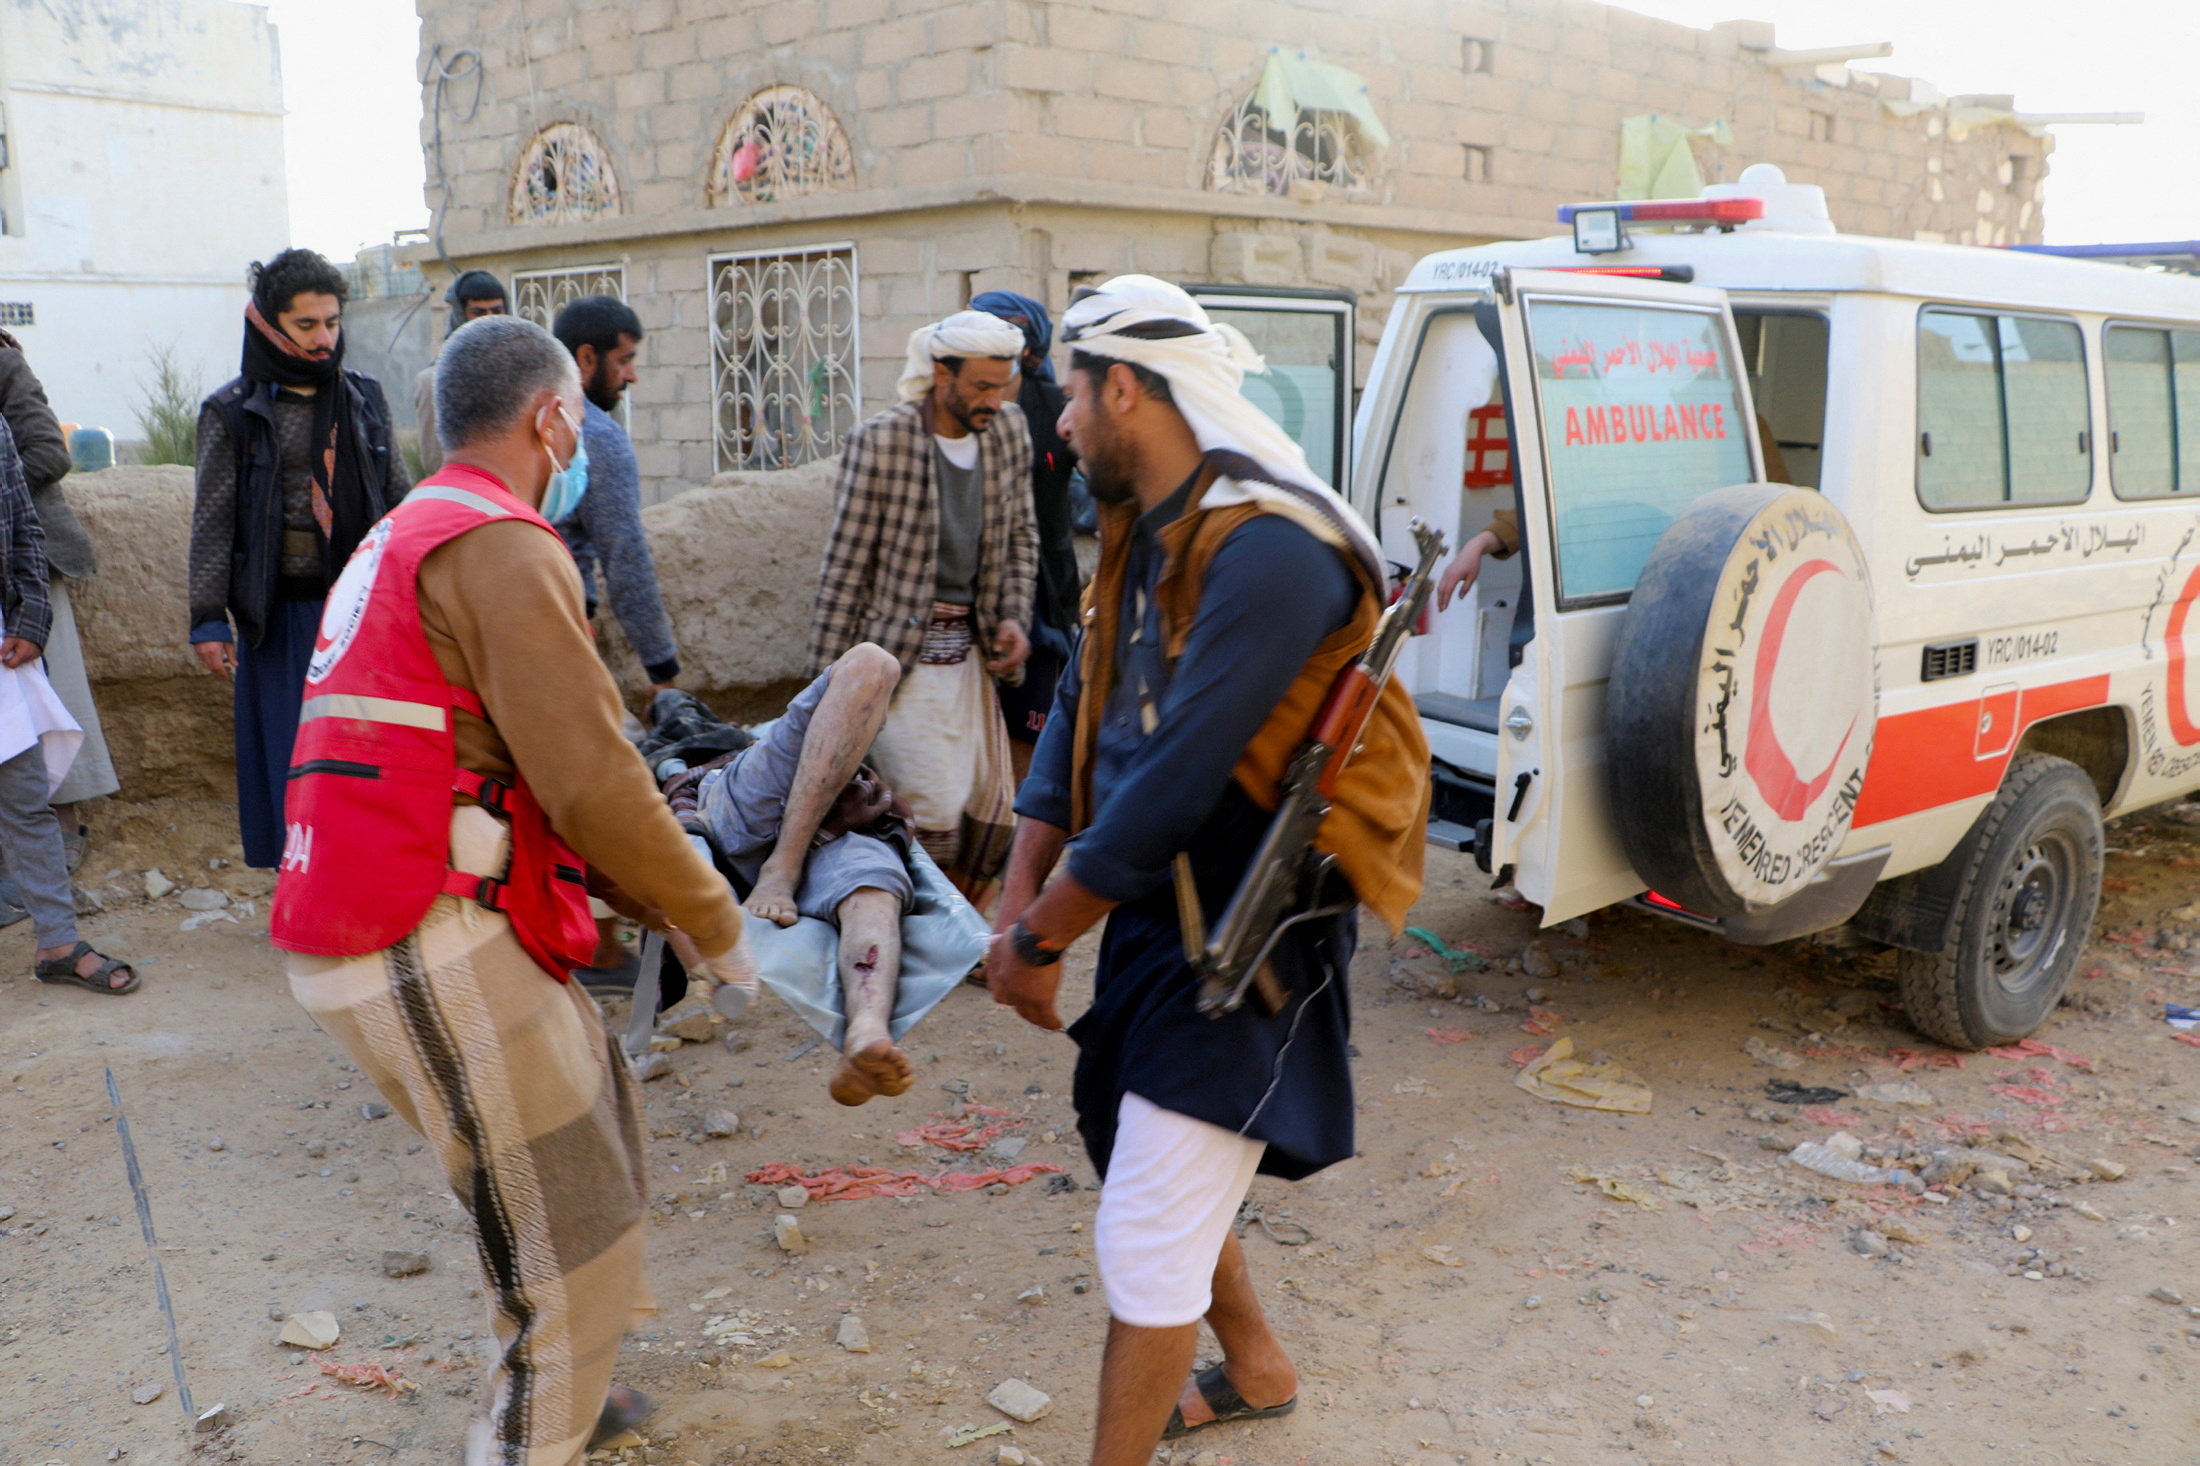 EEUU manifestó su preocupación por la situación en Yemen